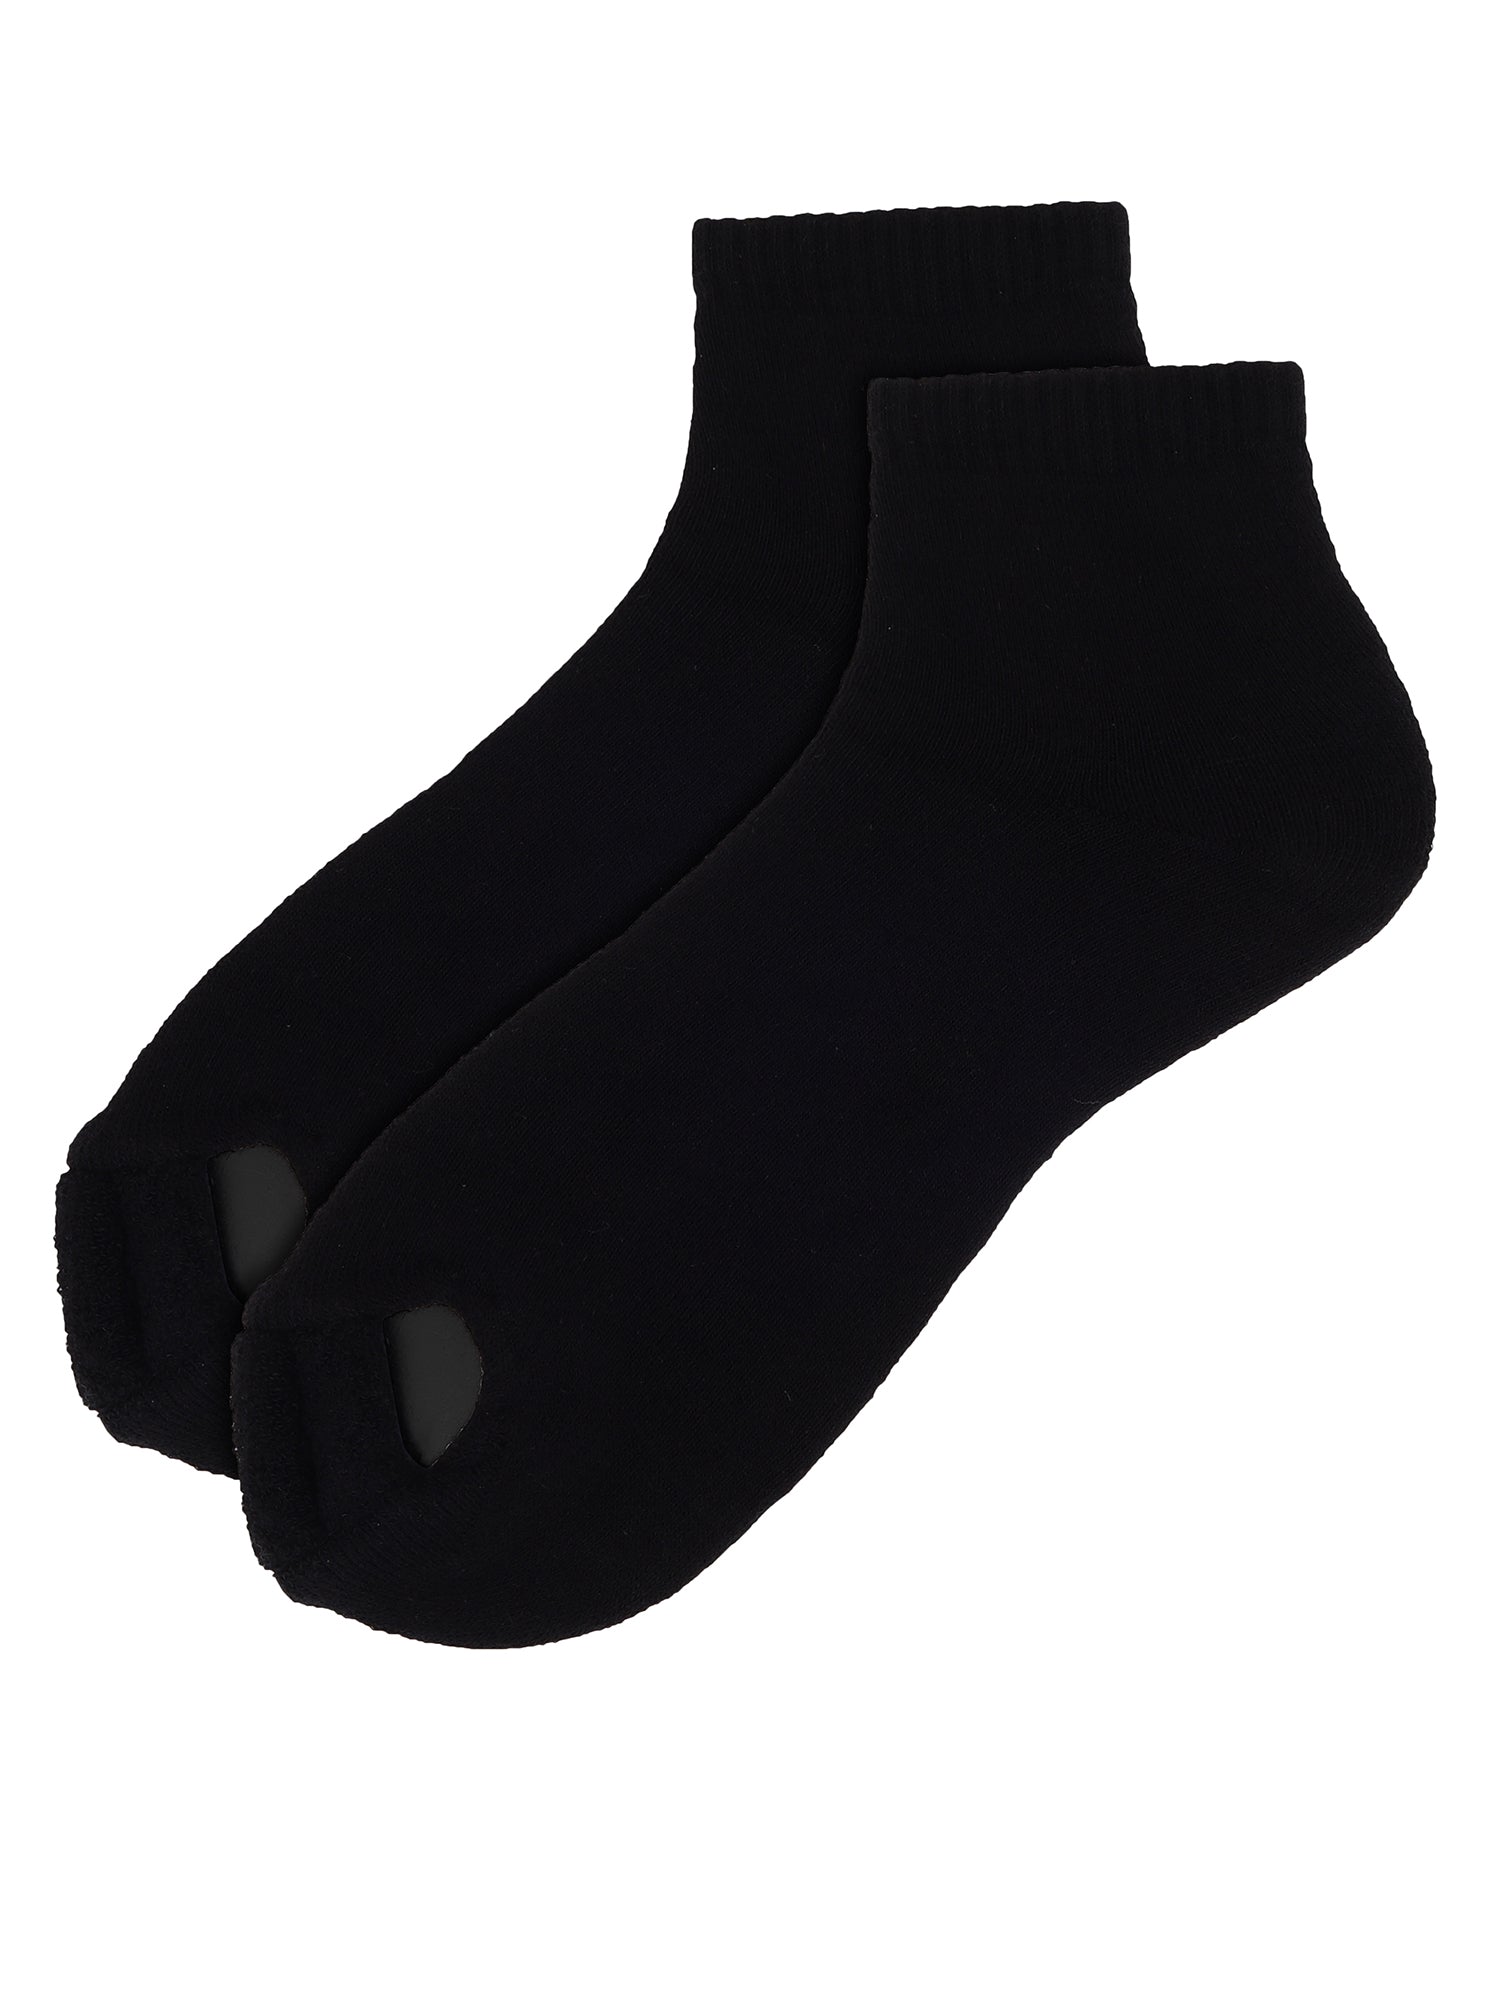 Compression Therapy Mid Calf Crew Socks - BLACK